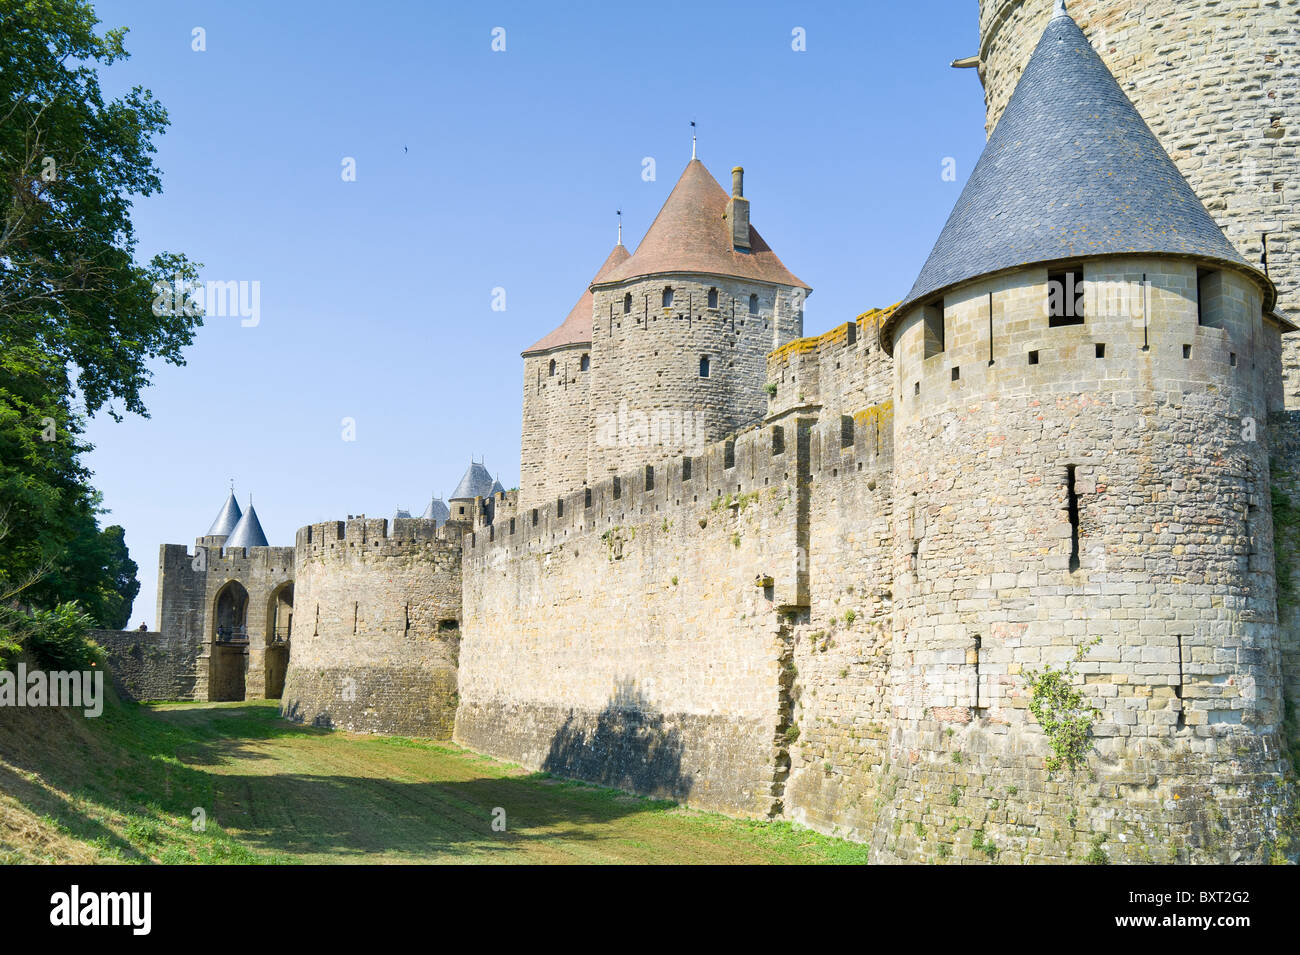 Le Chateau de Carcassone Languedoc Rousillon France Stock Photo